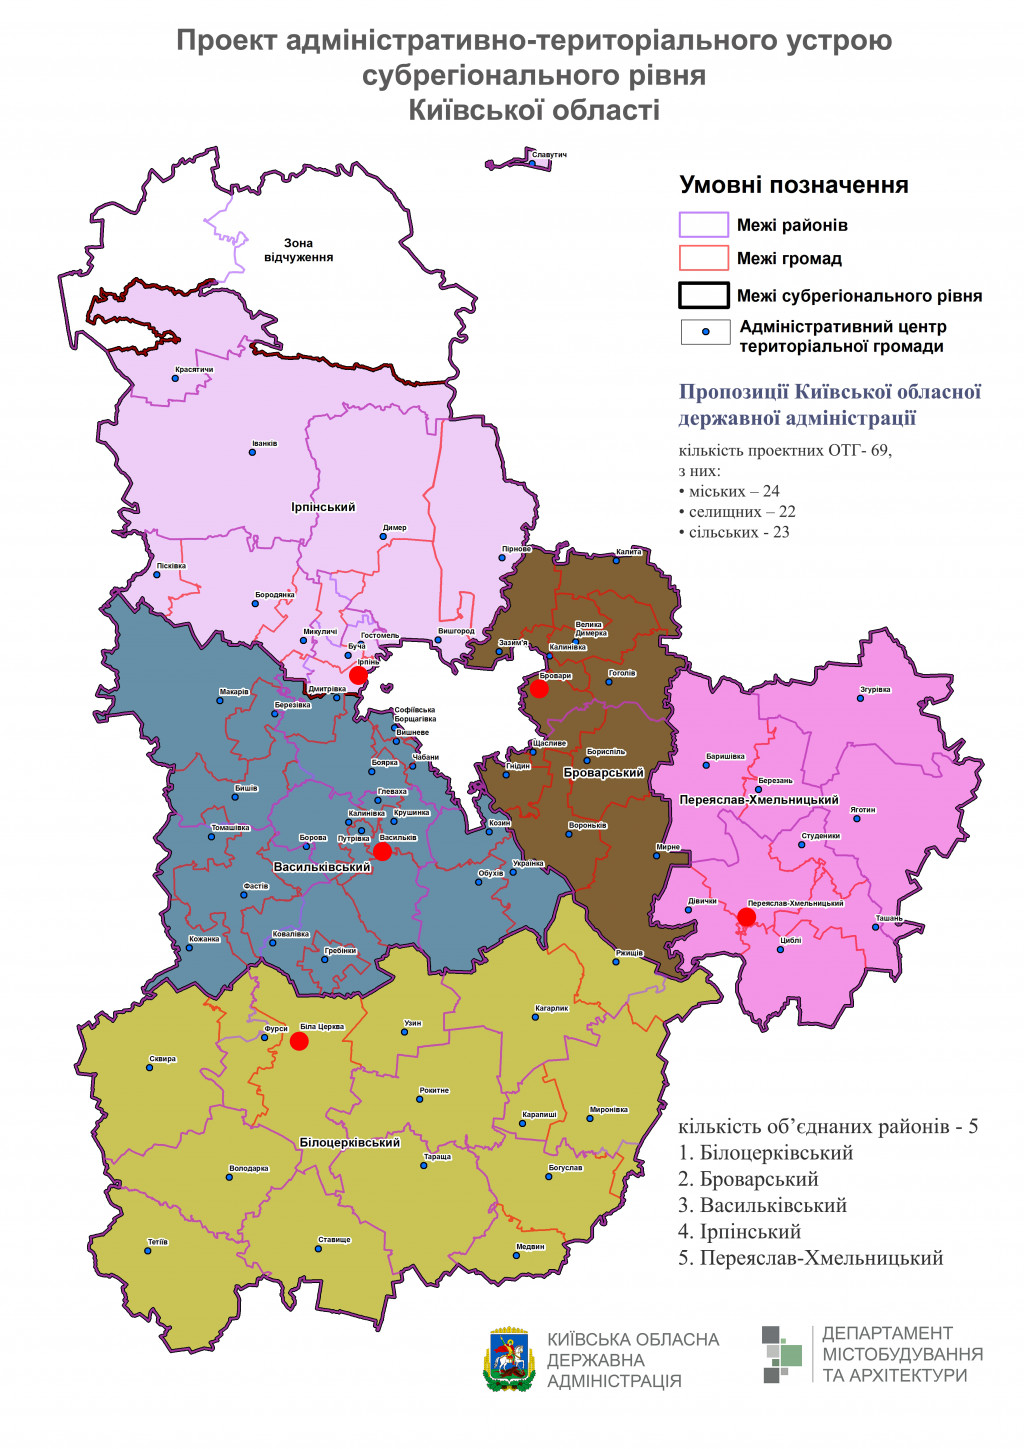 Без Обуховщины и Яготинщины: 25 районов Киевской области перестанут существовать